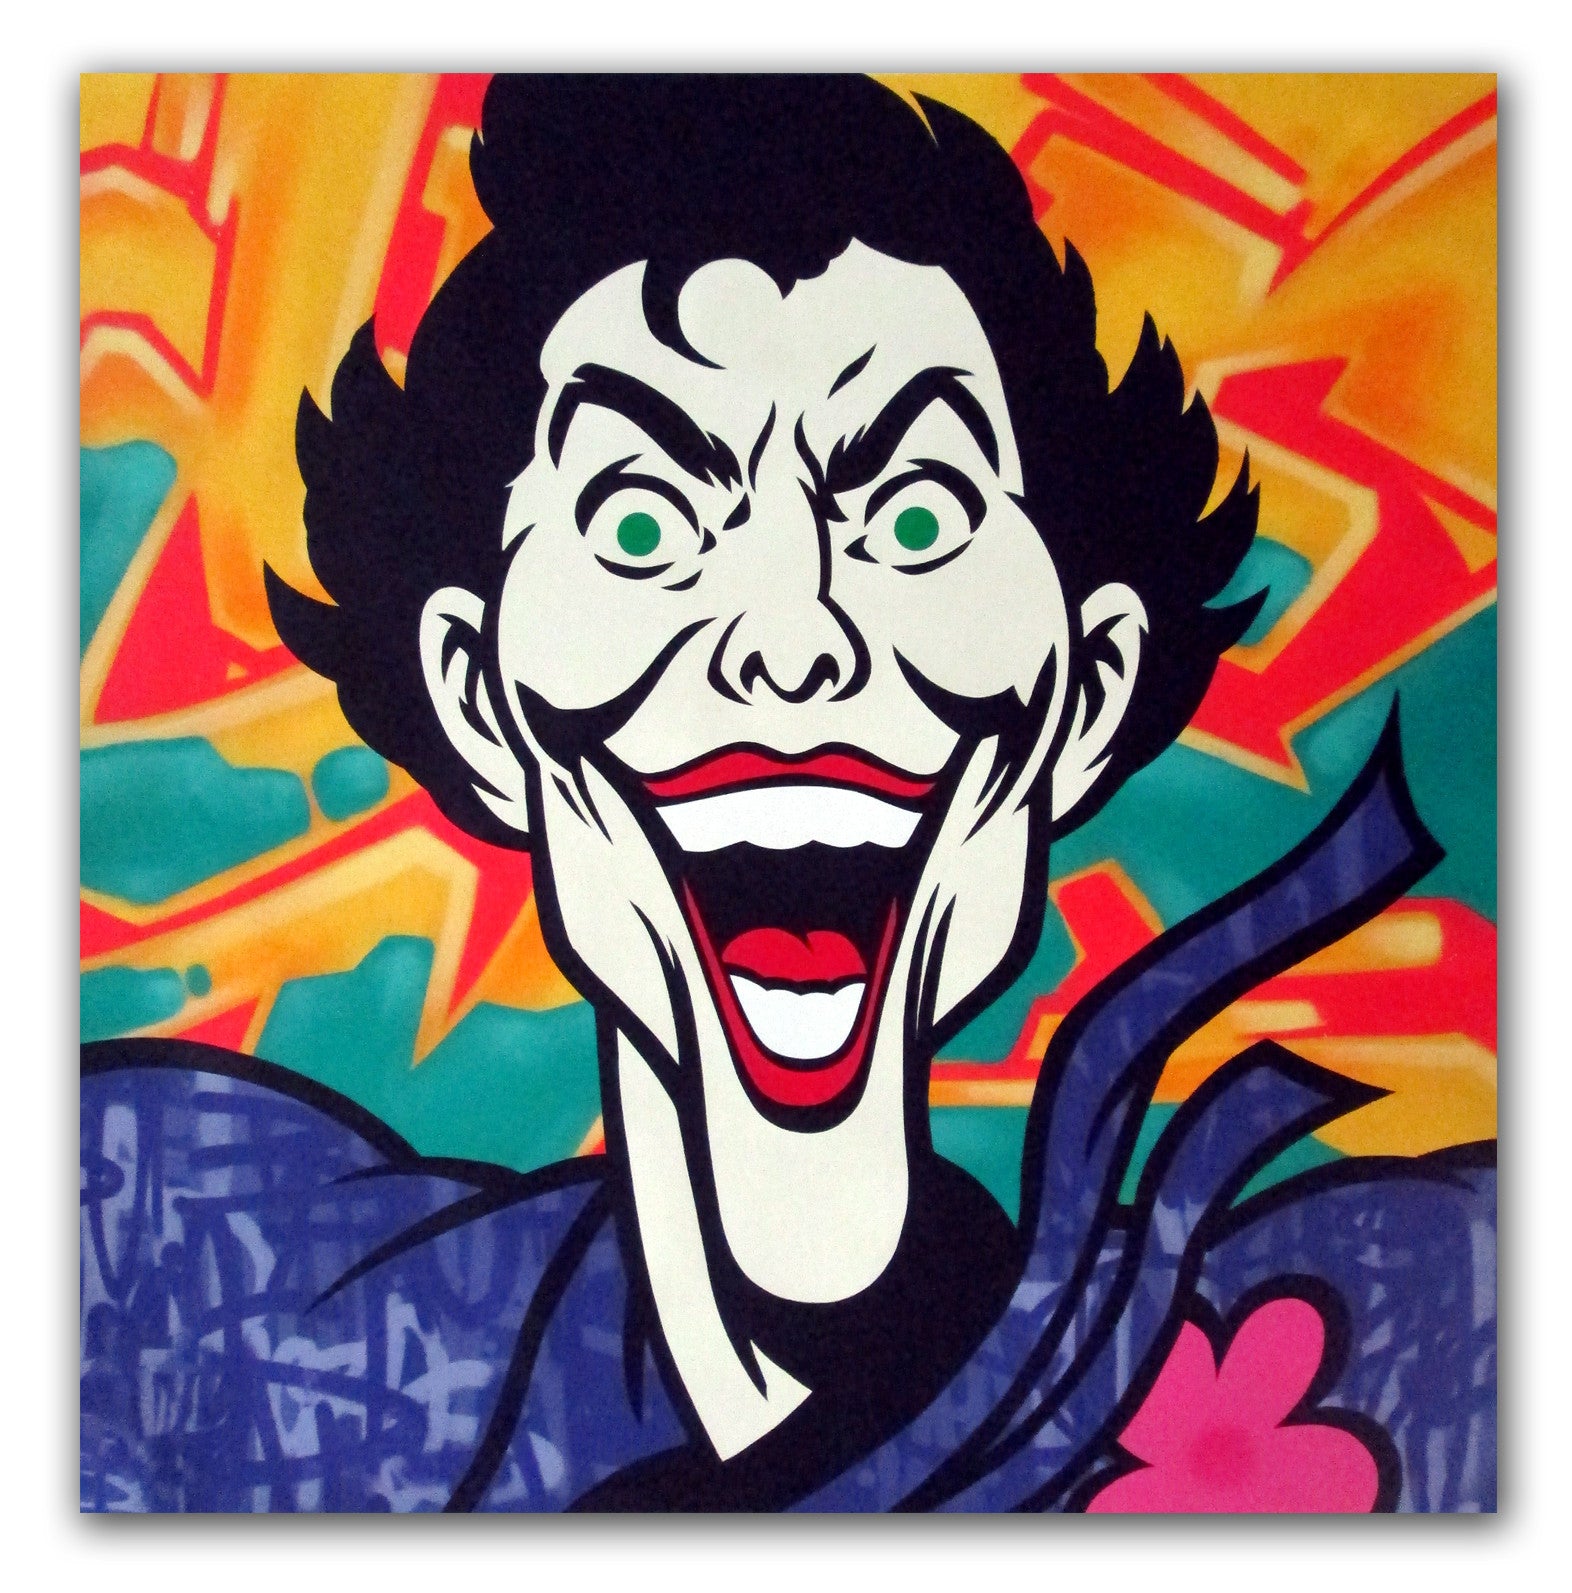 SEEN - "Joker" Aerosol on Canvas